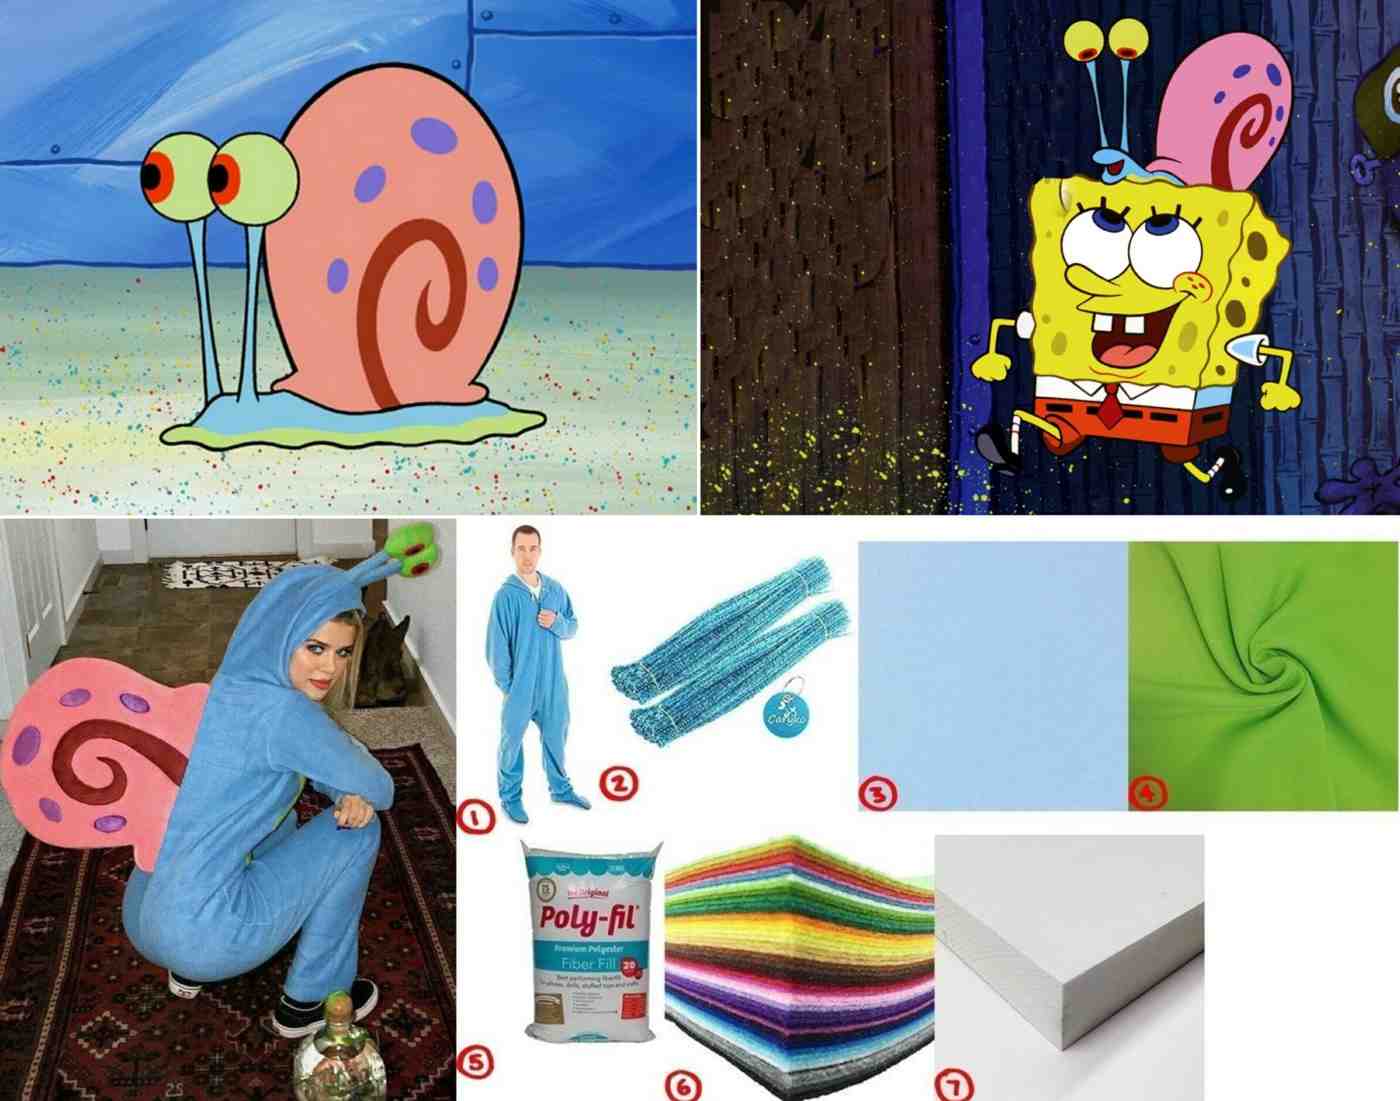 Die Schnecke Gary für Spongebob Schwammkopf Kostüme wählen